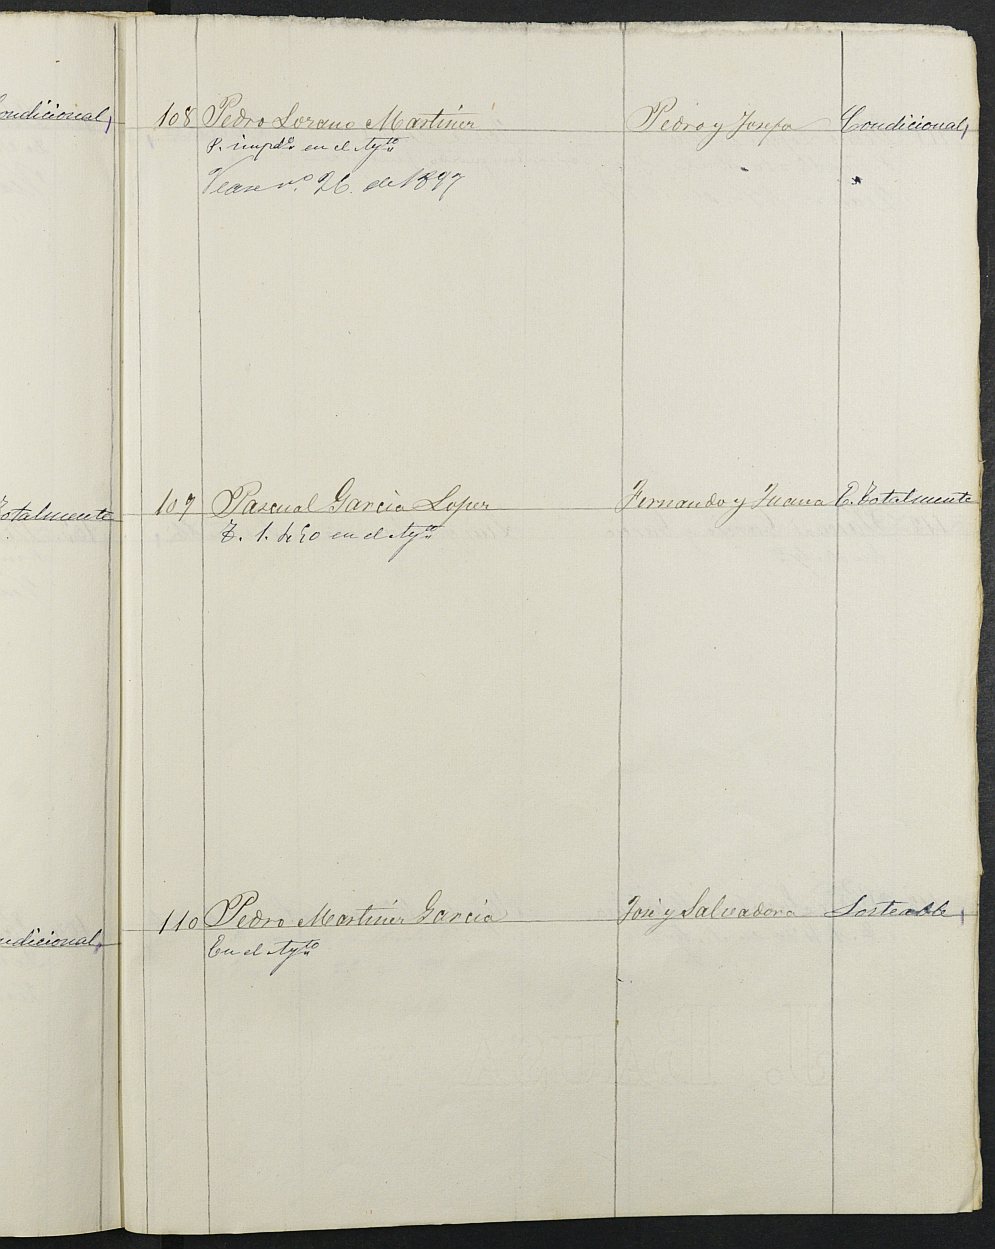 Relación de individuos declarados soldados e ingresados en Caja Moratalla de 1896.